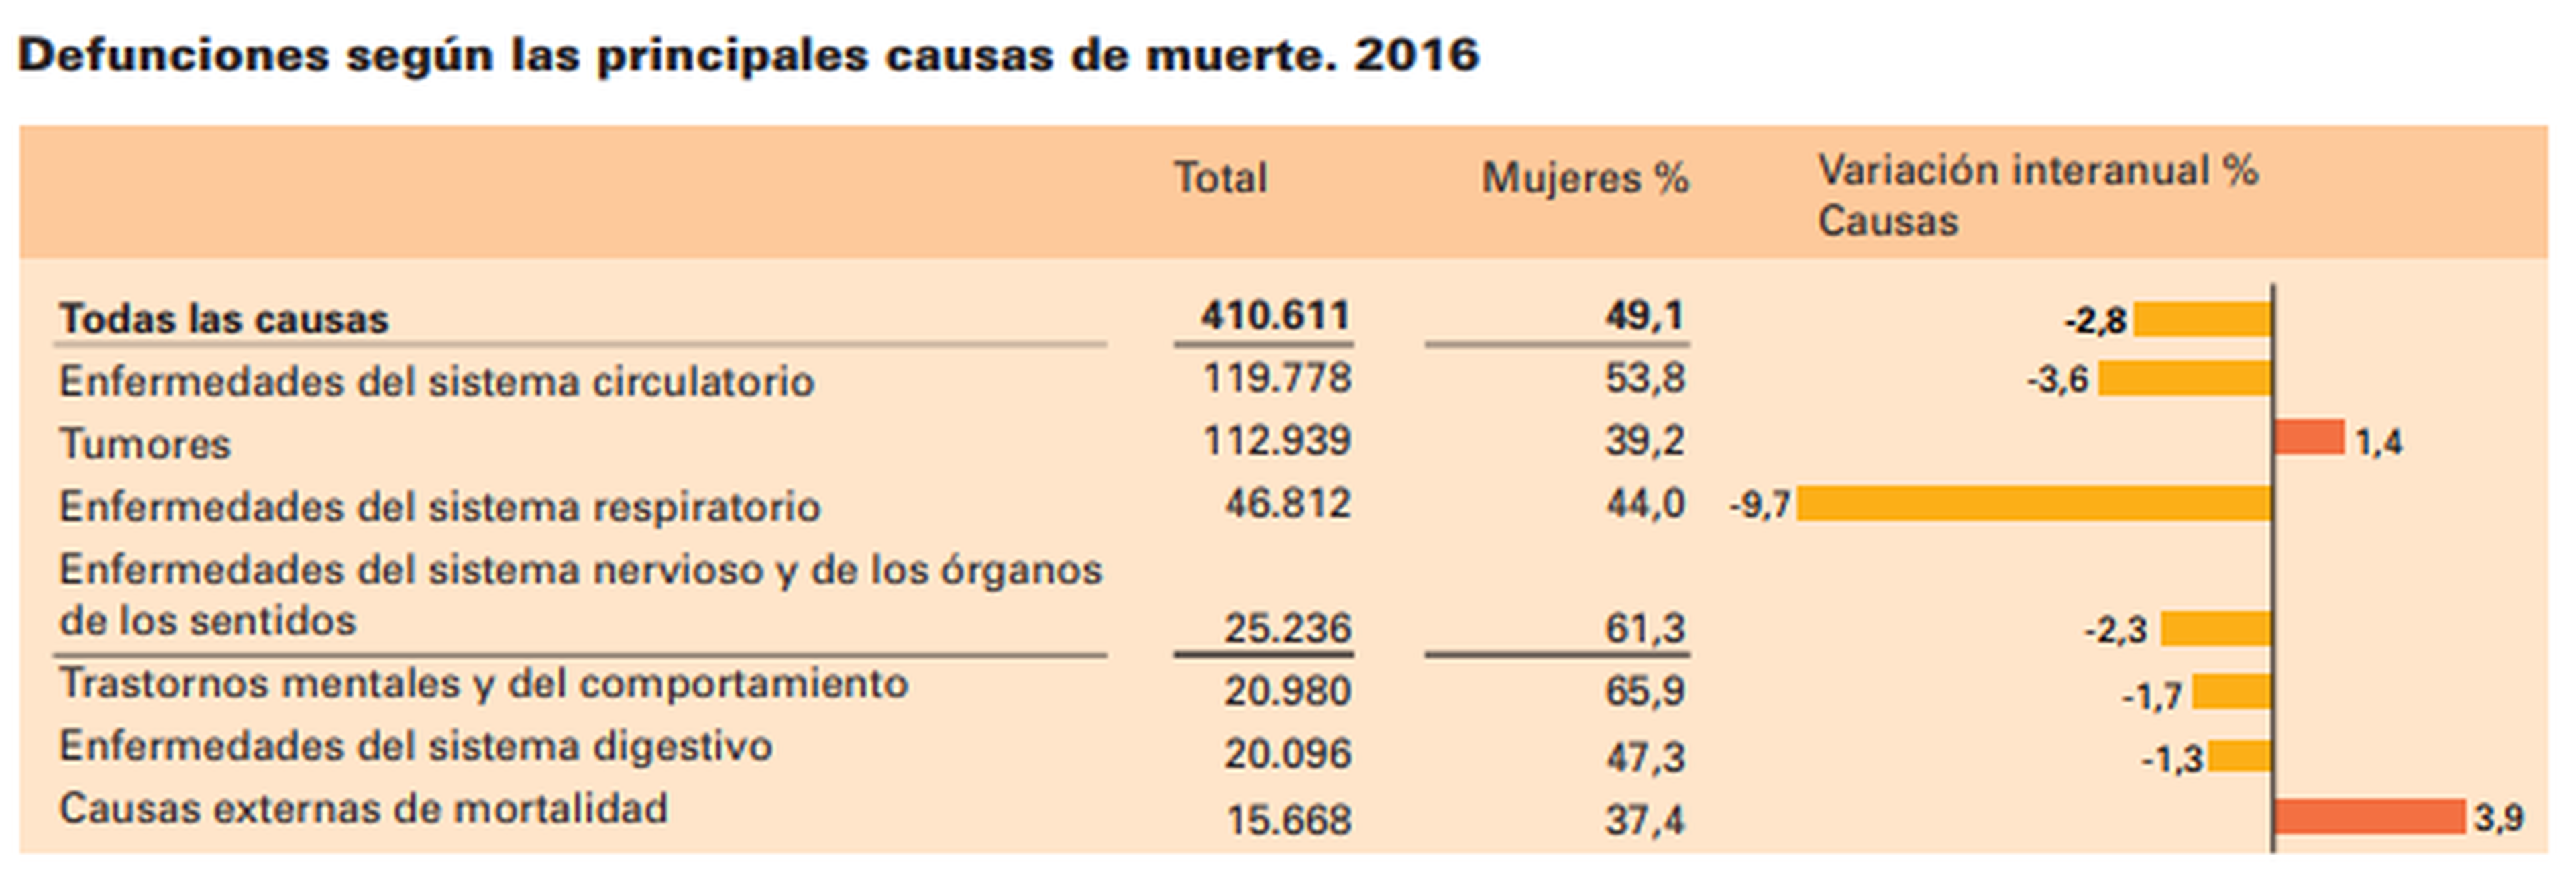 Las principales causas de mortalidad en España en el año 2016.